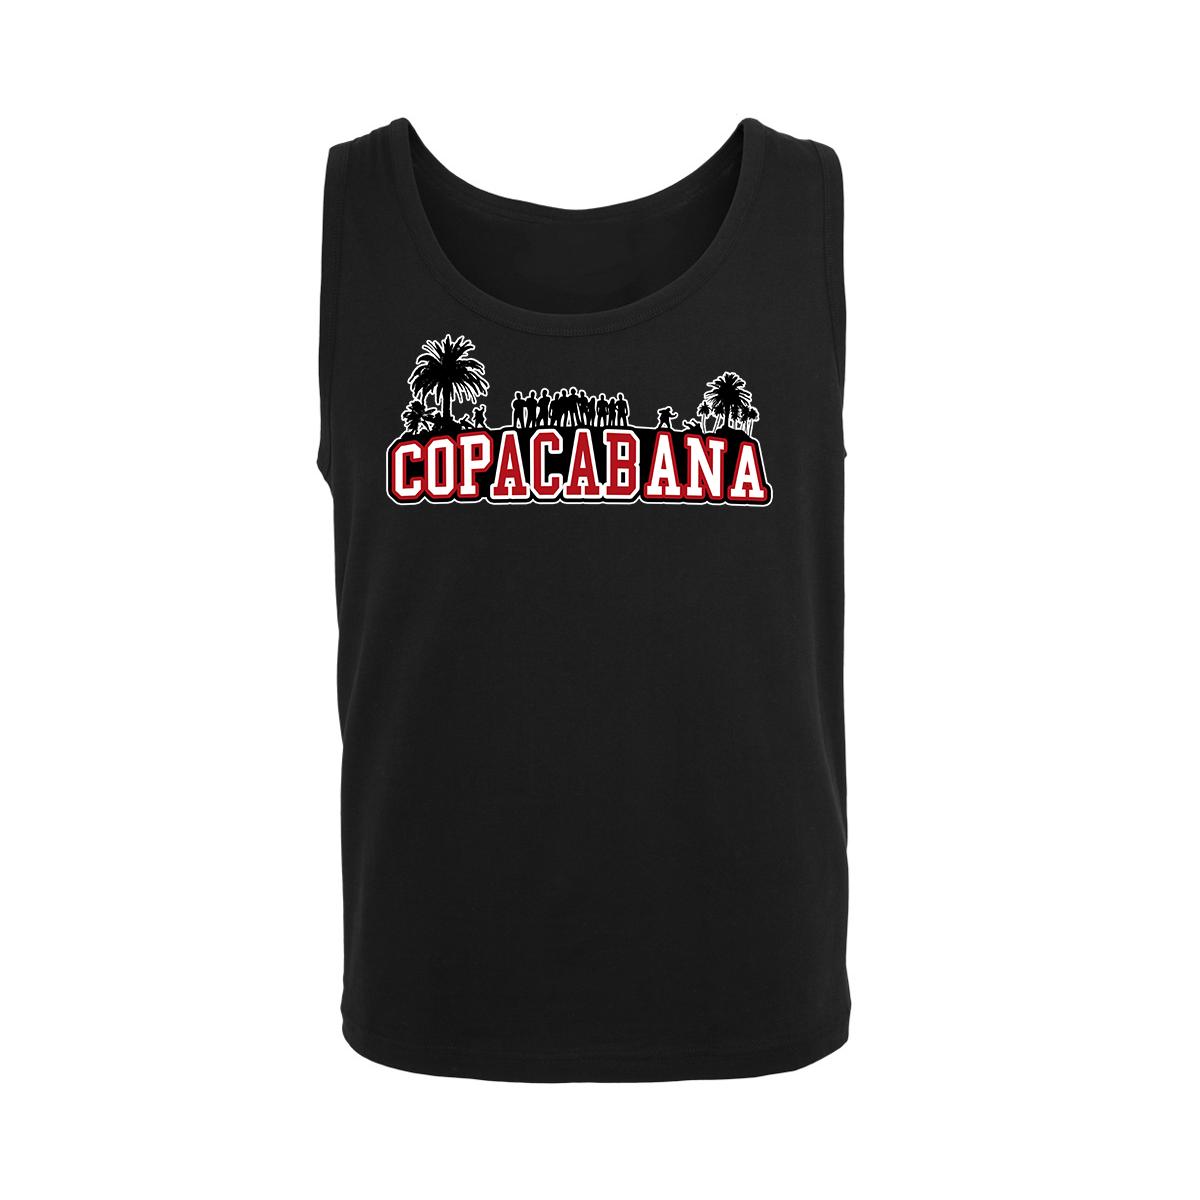 Copacabana - Druck rot-weiß - Männer Muskelshirt - schwarz